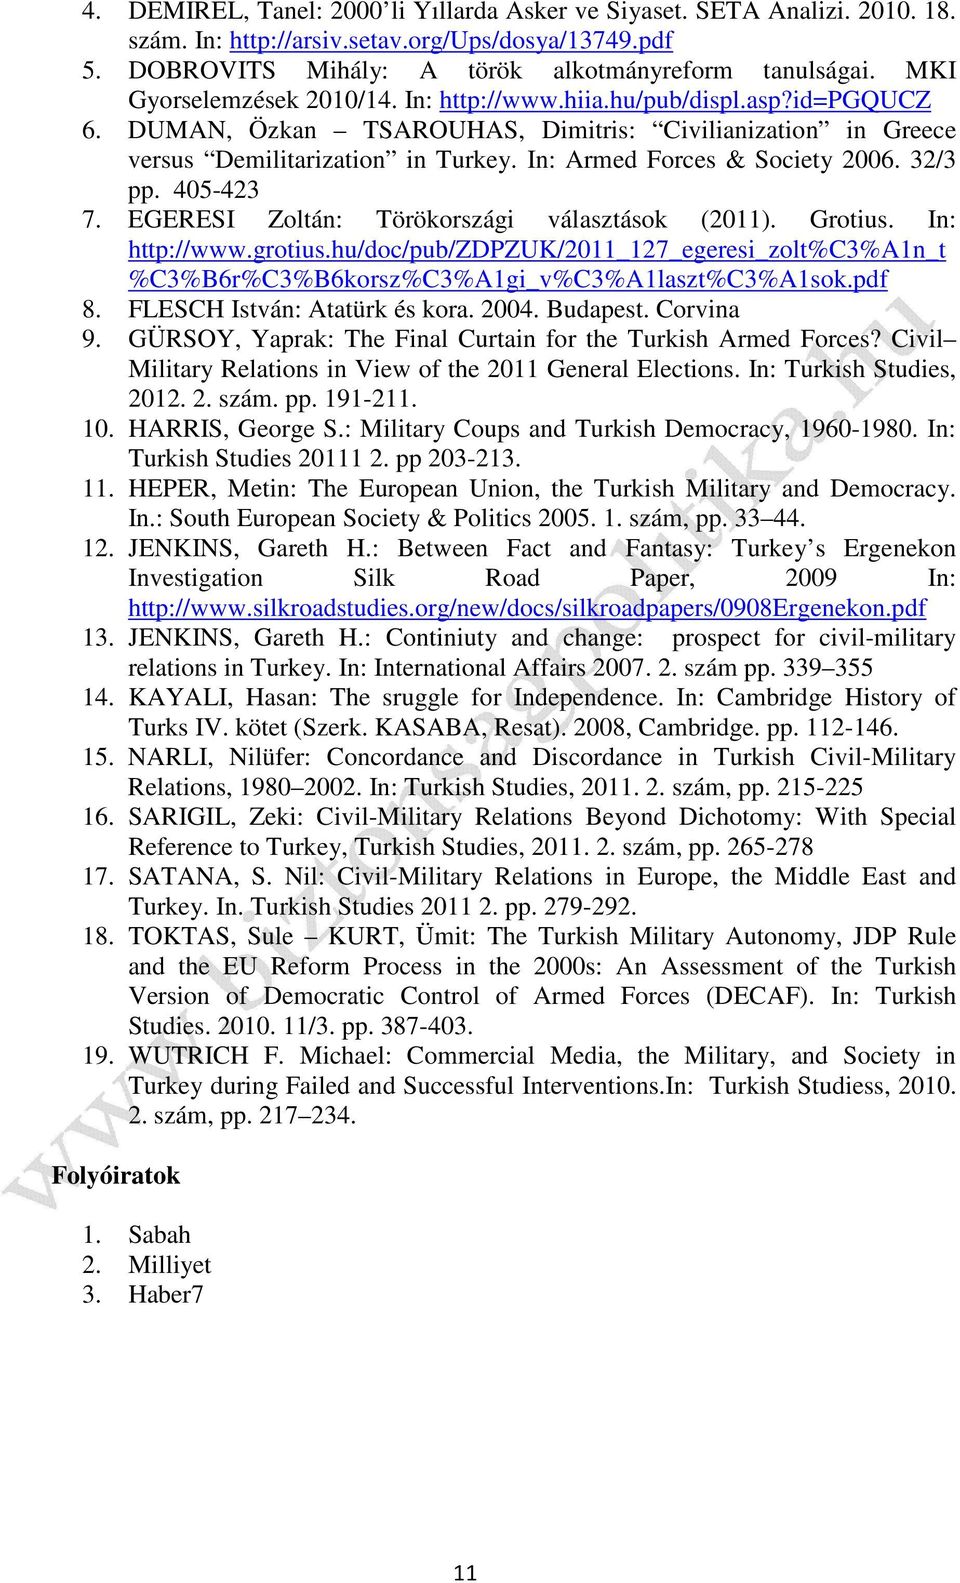 In: Armed Forces & Society 2006. 32/3 pp. 405-423 7. EGERESI Zoltán: Törökországi választások (2011). Grotius. In: http://www.grotius.